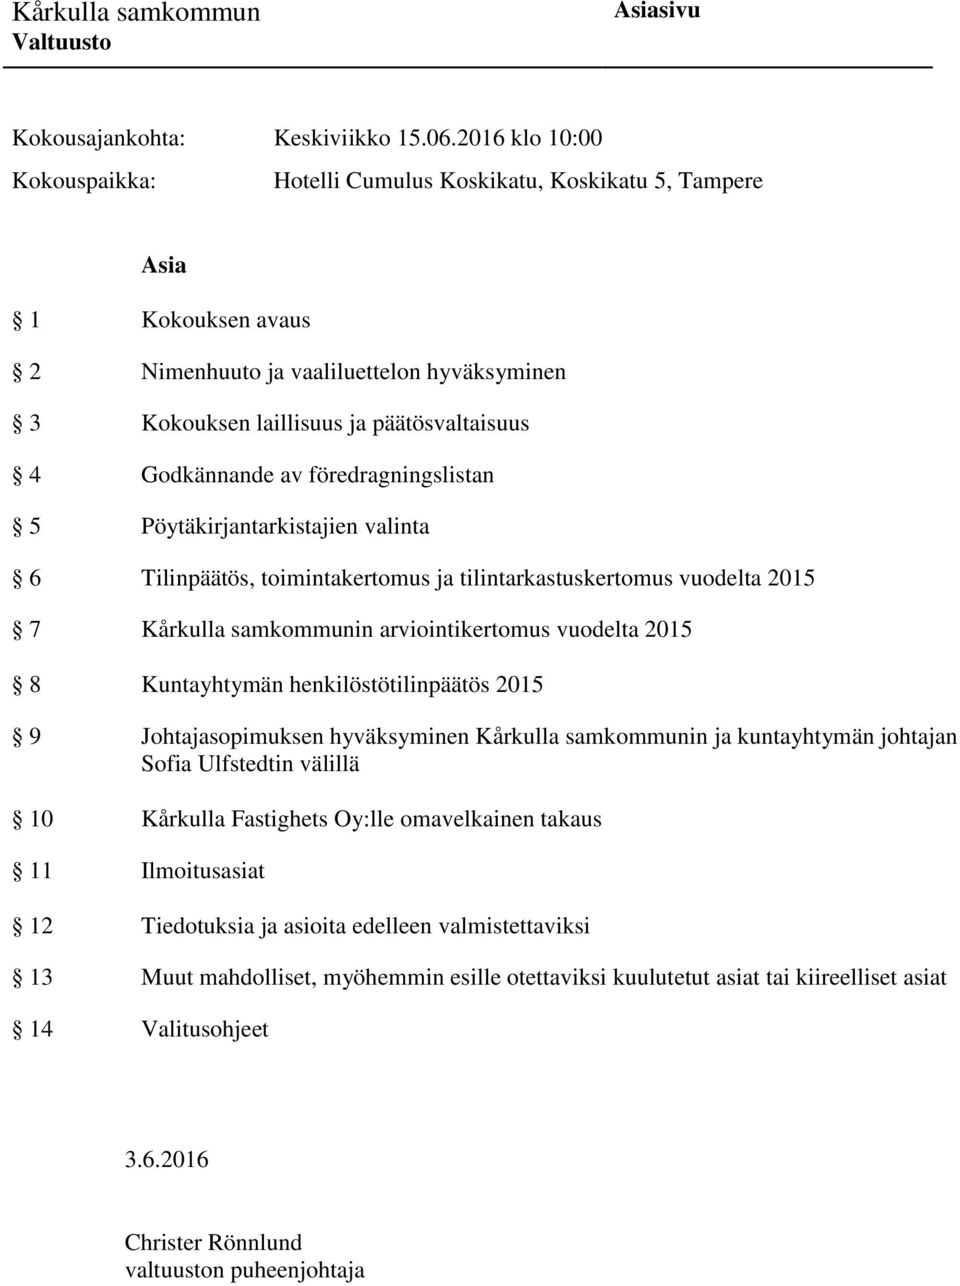 arviointikertomus vuodelta 2015 8 Kuntayhtymän henkilöstötilinpäätös 2015 9 Johtajasopimuksen hyväksyminen Kårkulla samkommunin ja kuntayhtymän johtajan Sofia Ulfstedtin välillä 10 Kårkulla